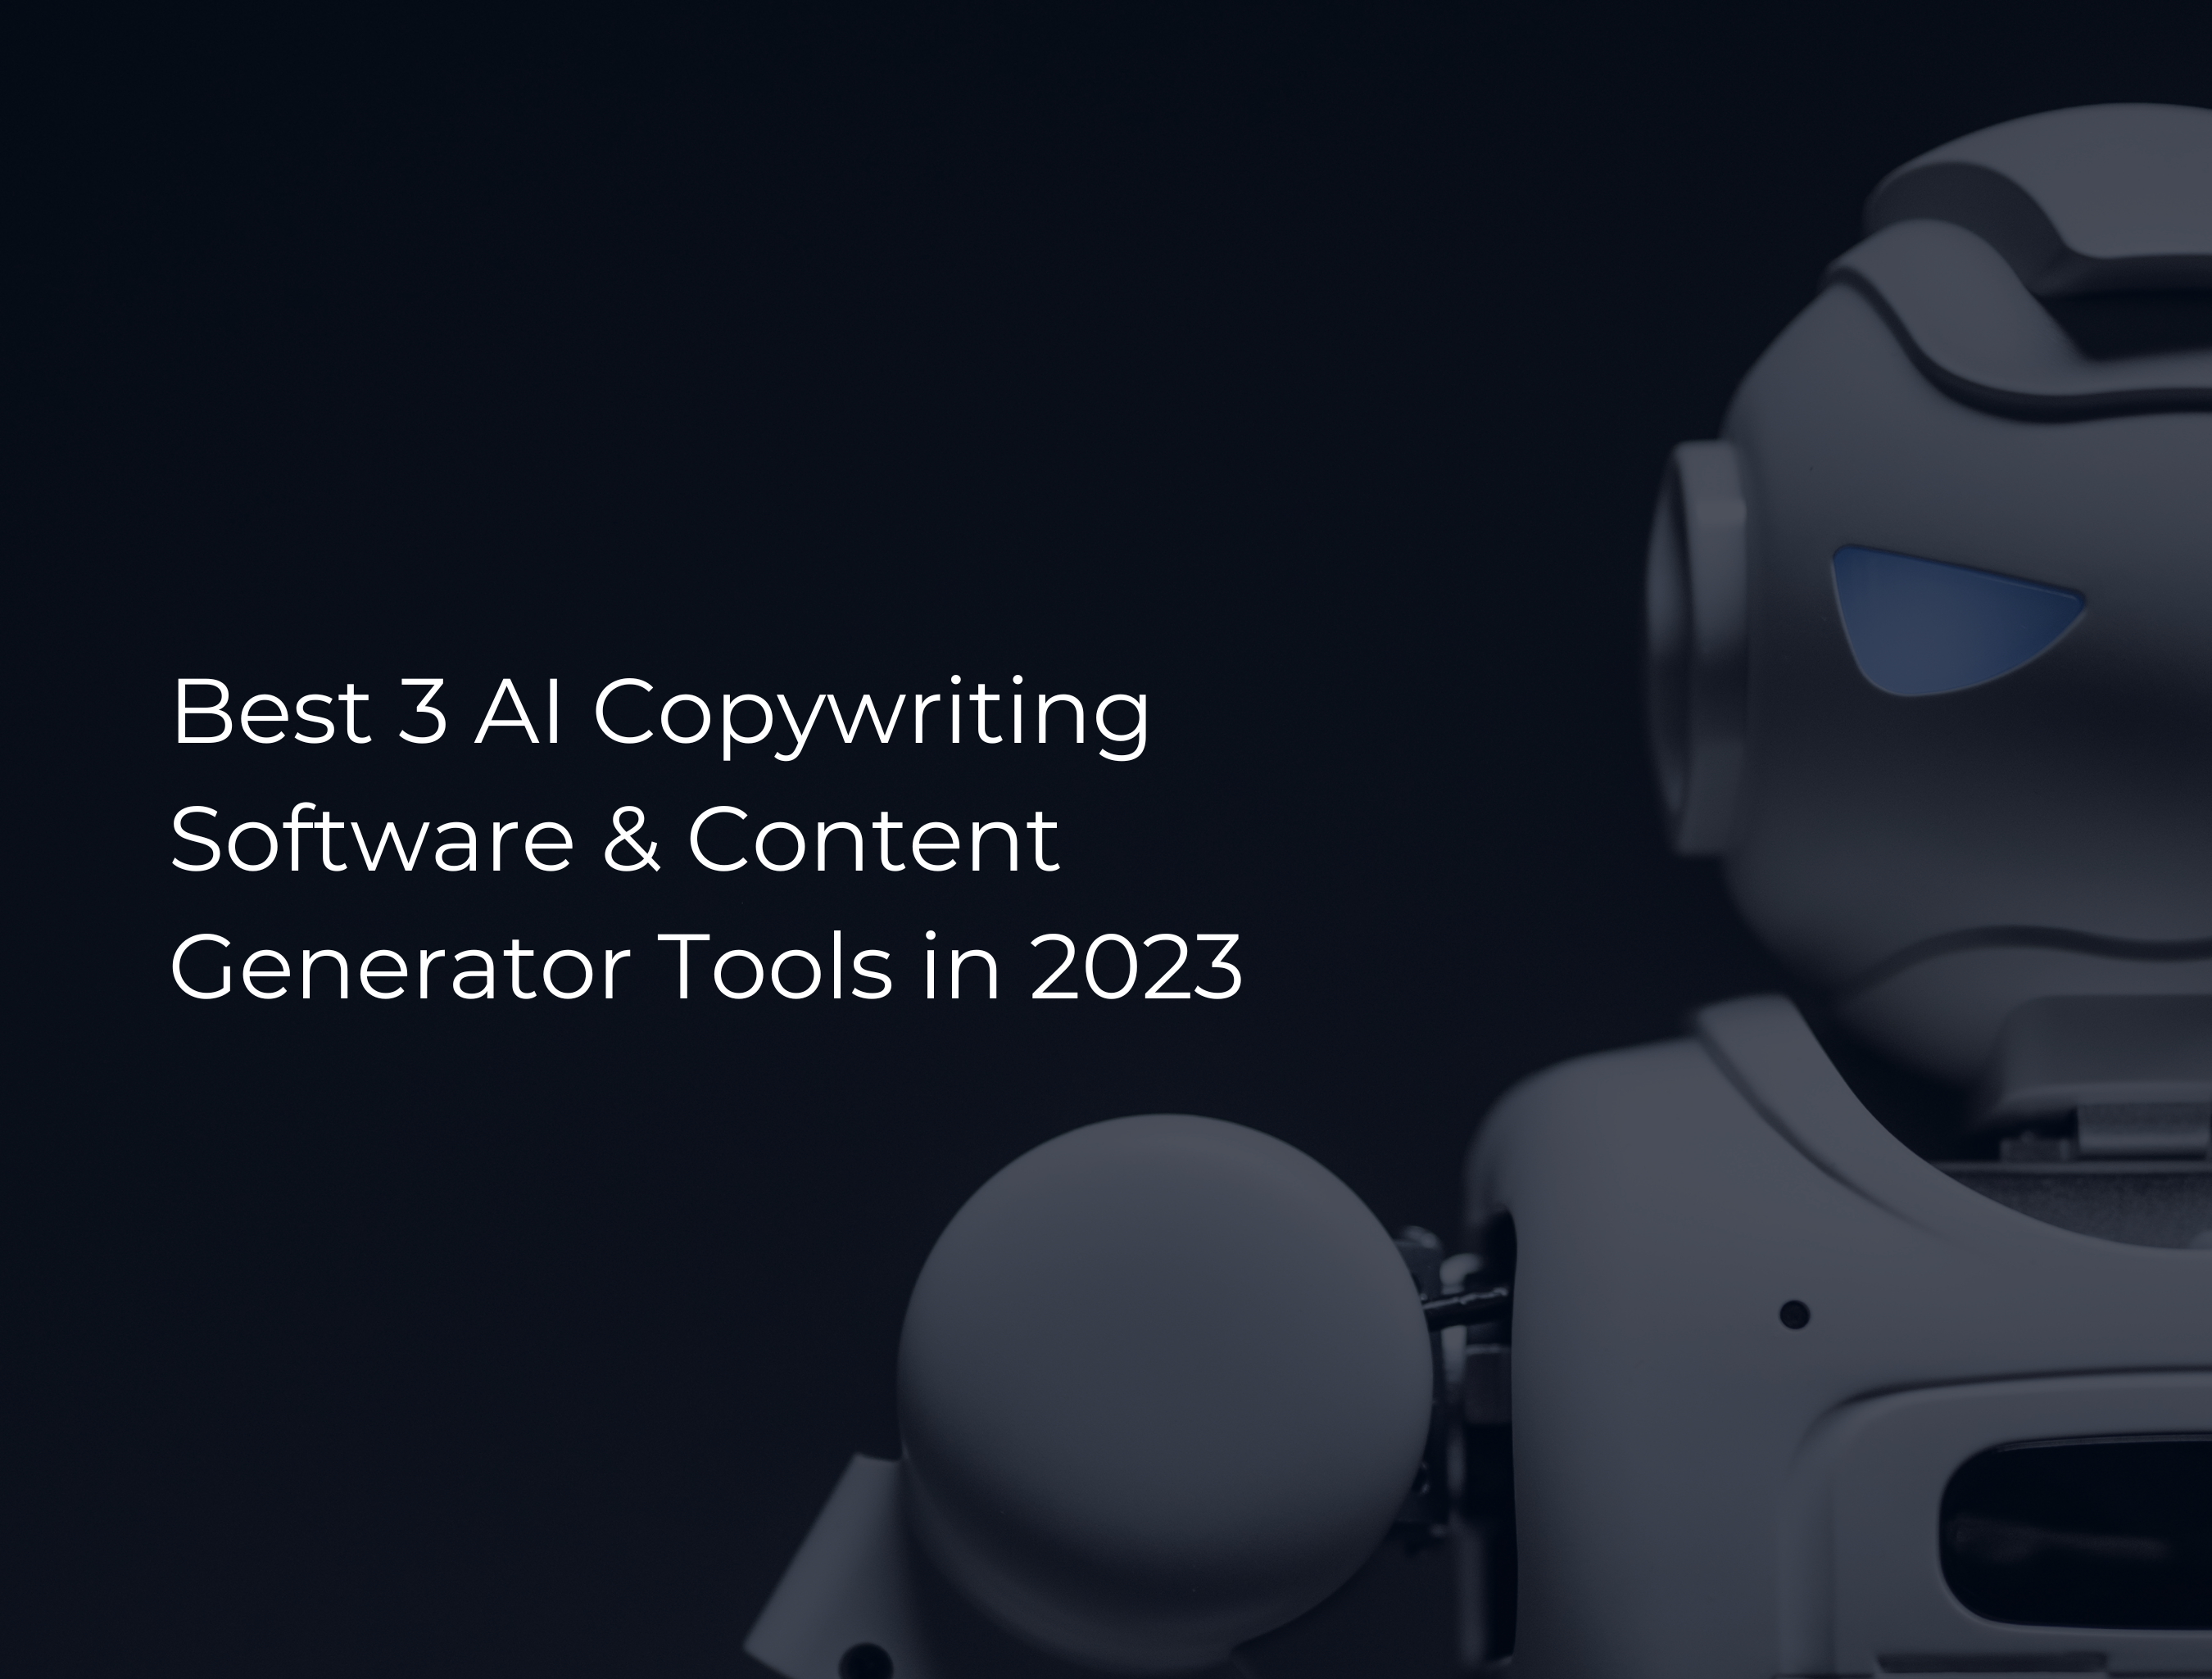 Content Generator Tools in 2023